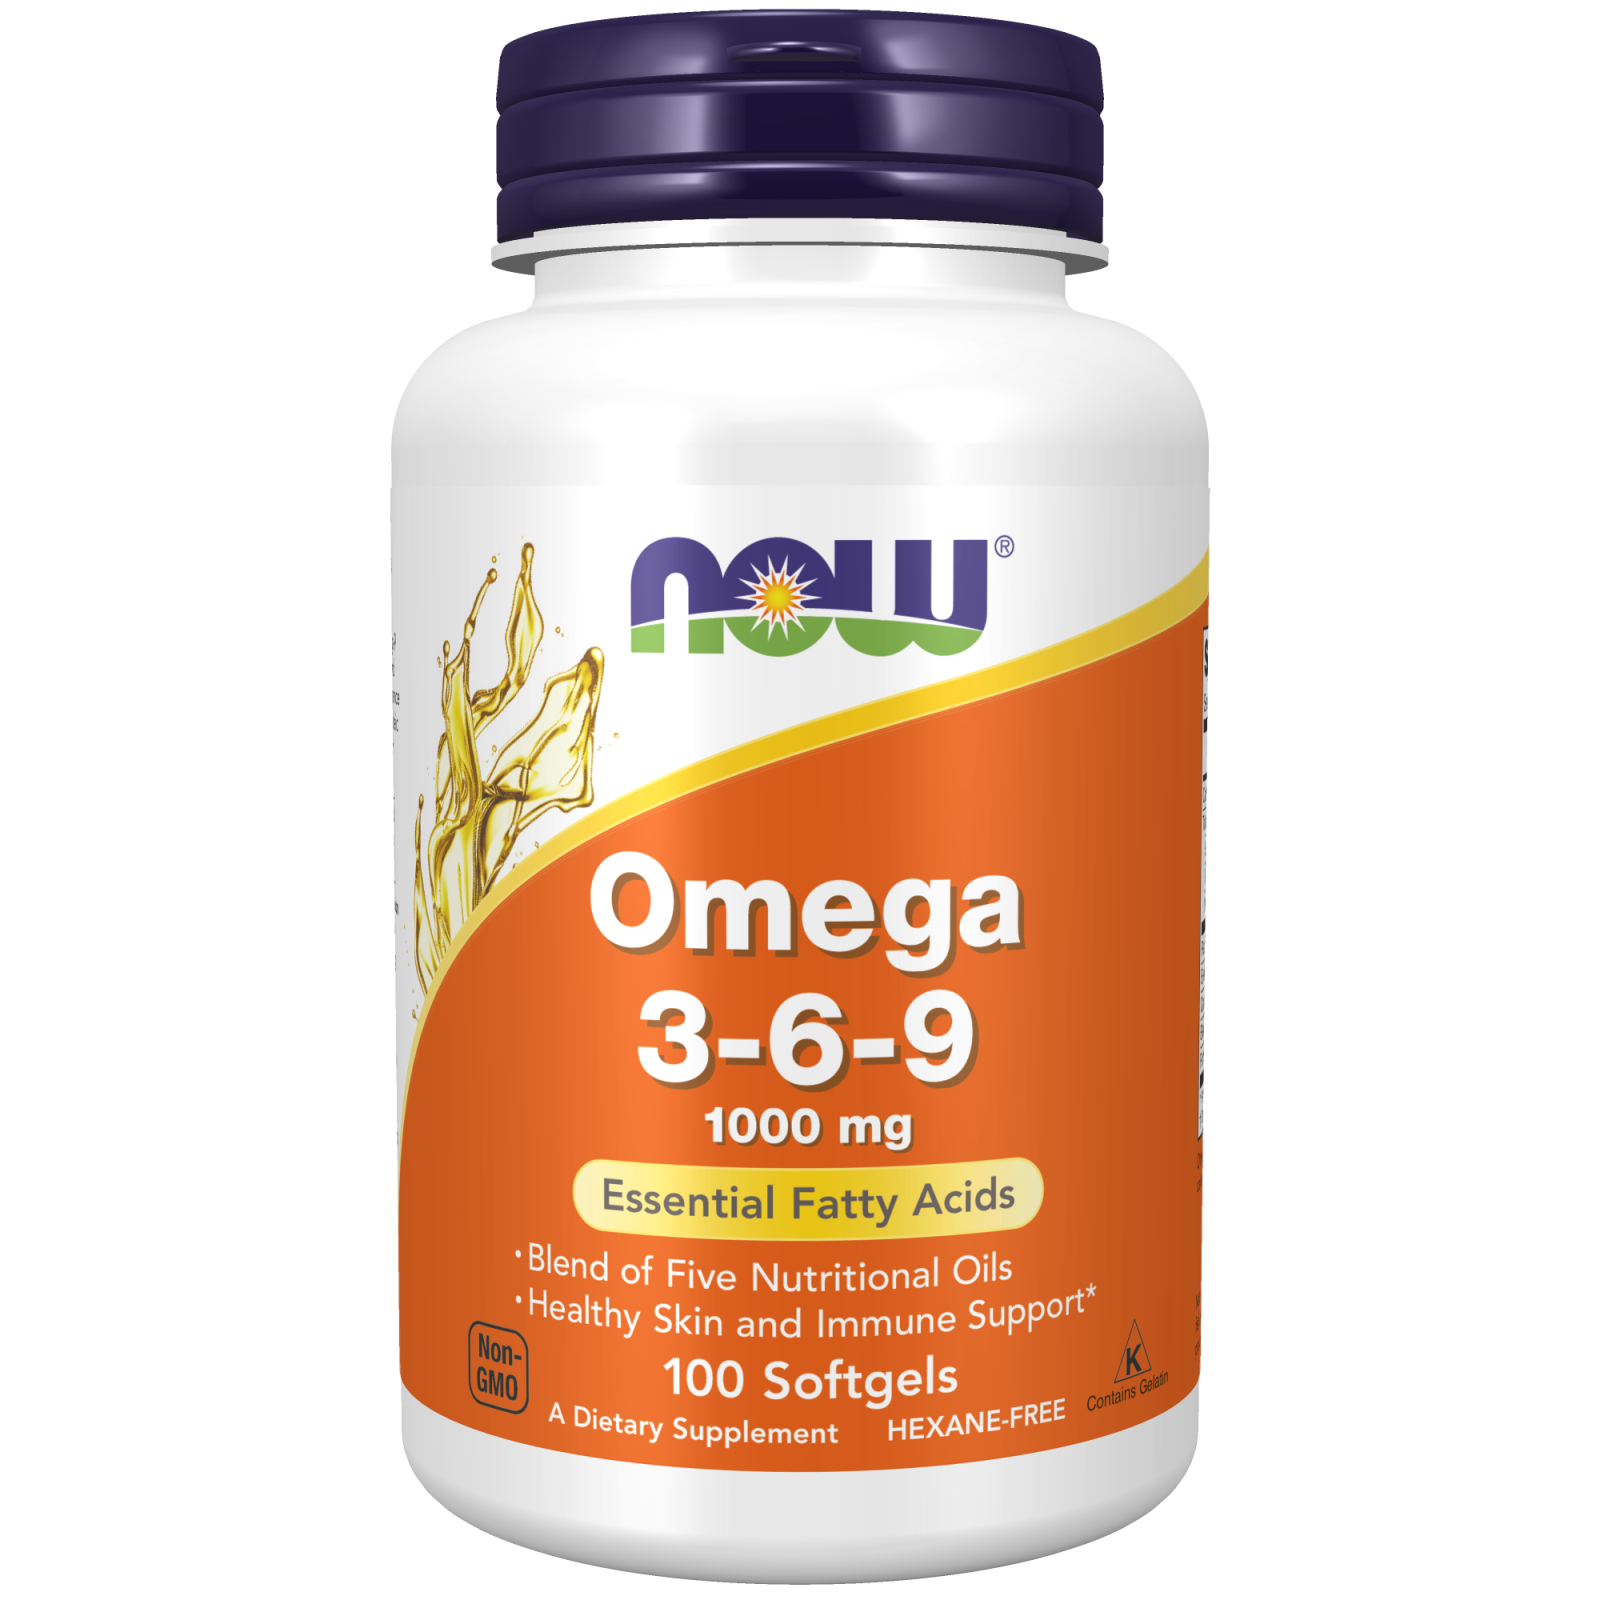 Omega 9 NOW Omega 369 | NOW Foods Omega